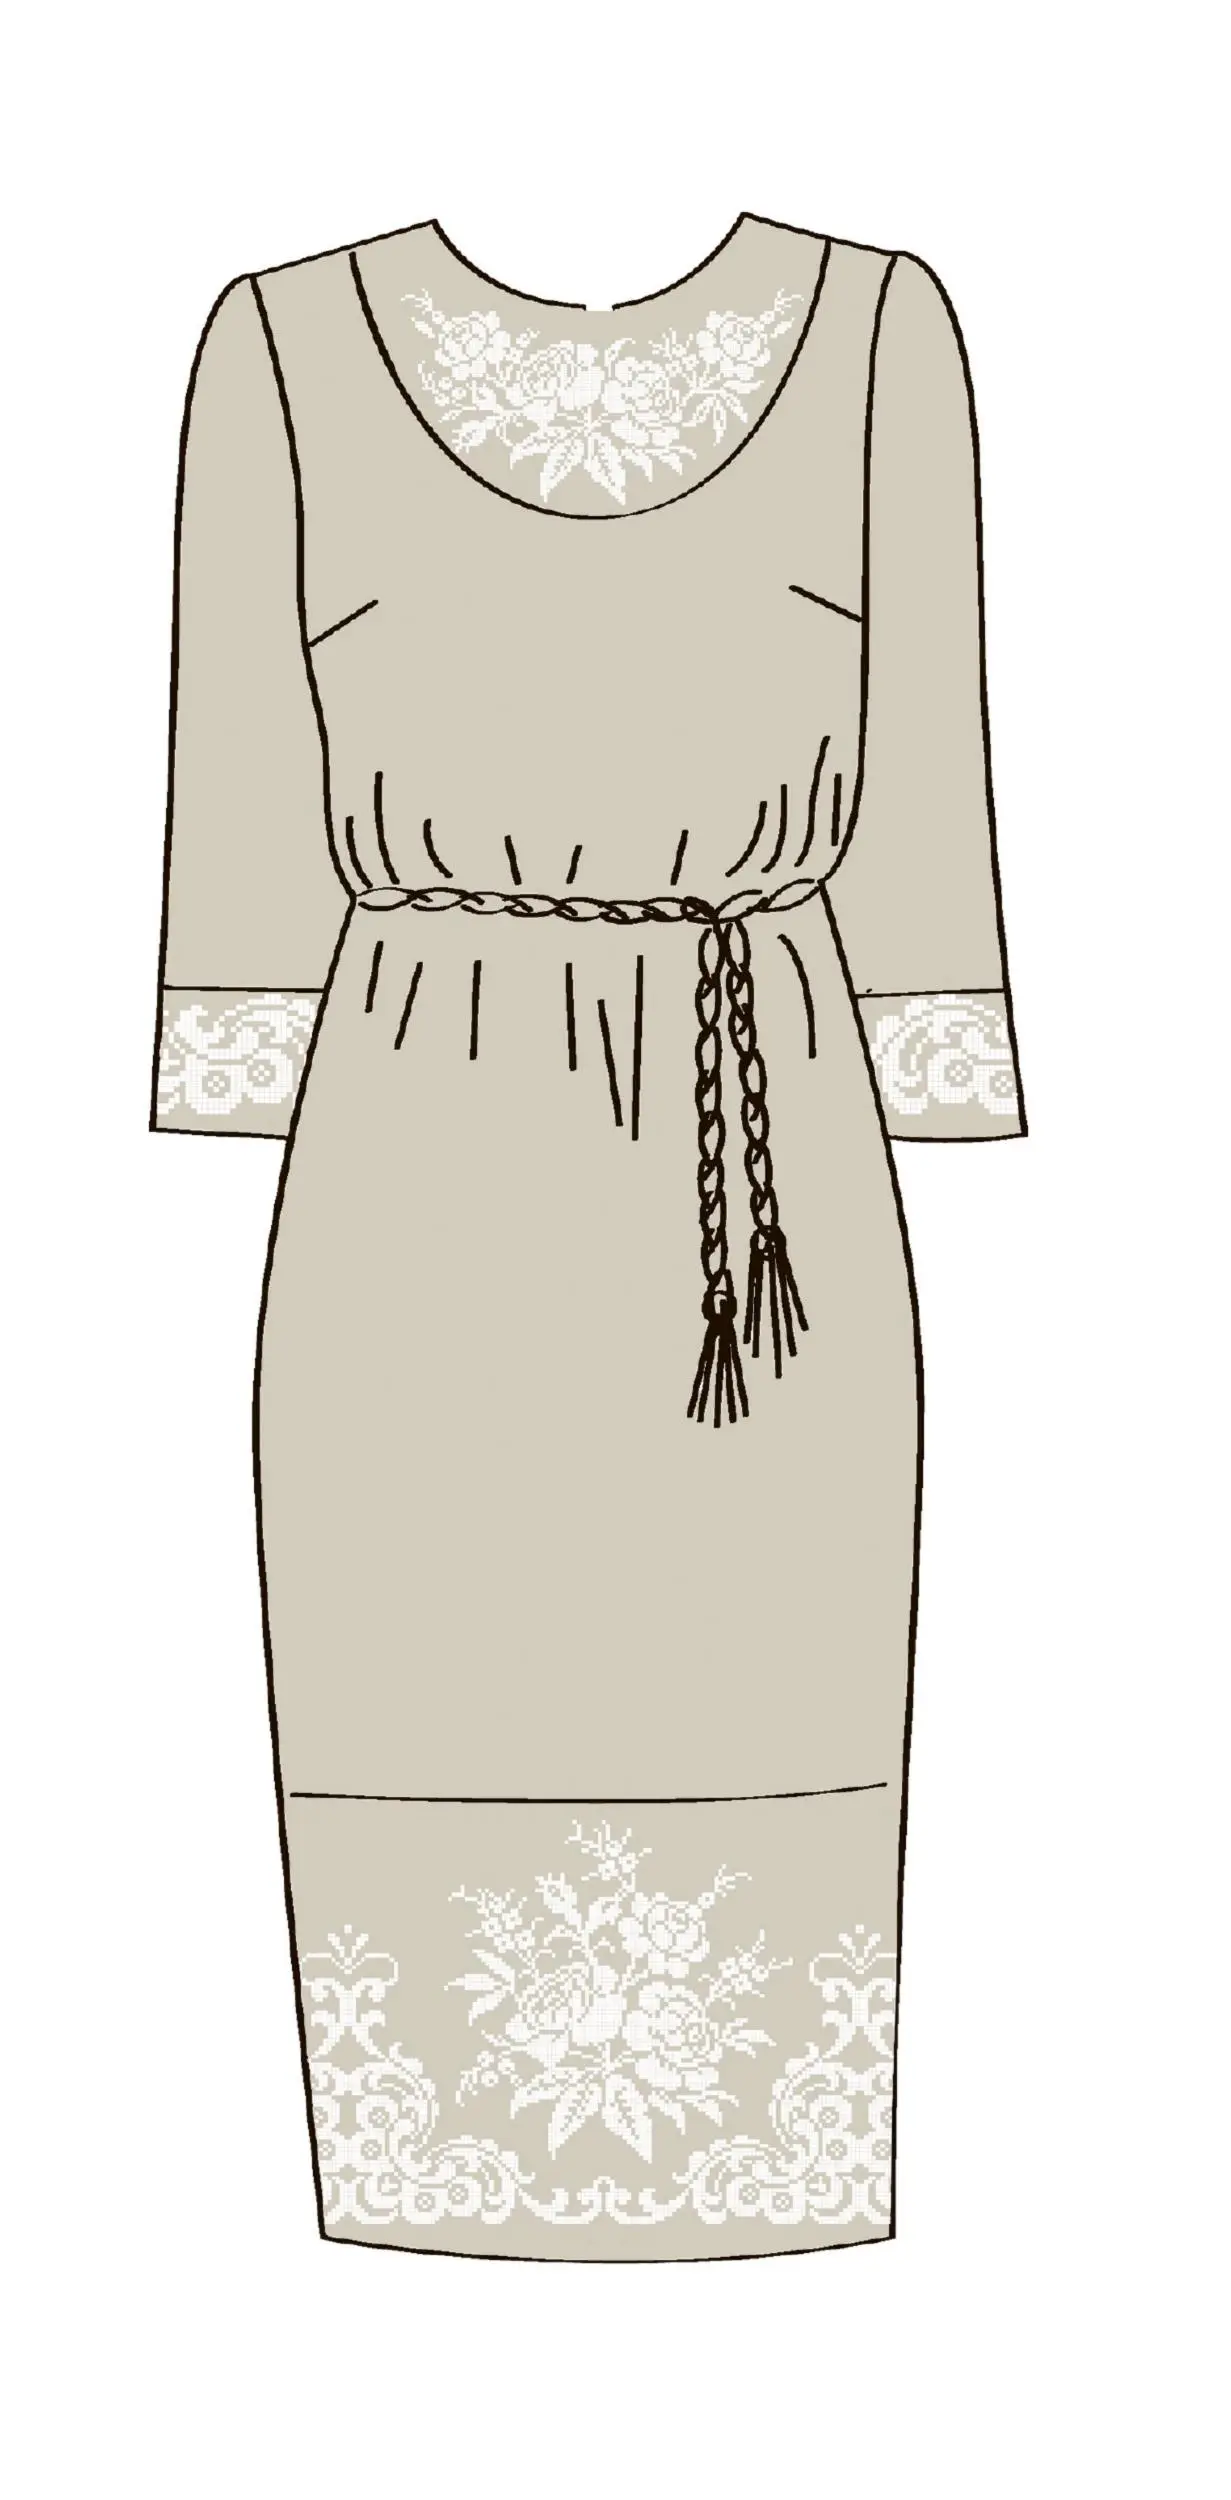 820-14/08 Плаття жіноче з поясом, льняне, розмір 52